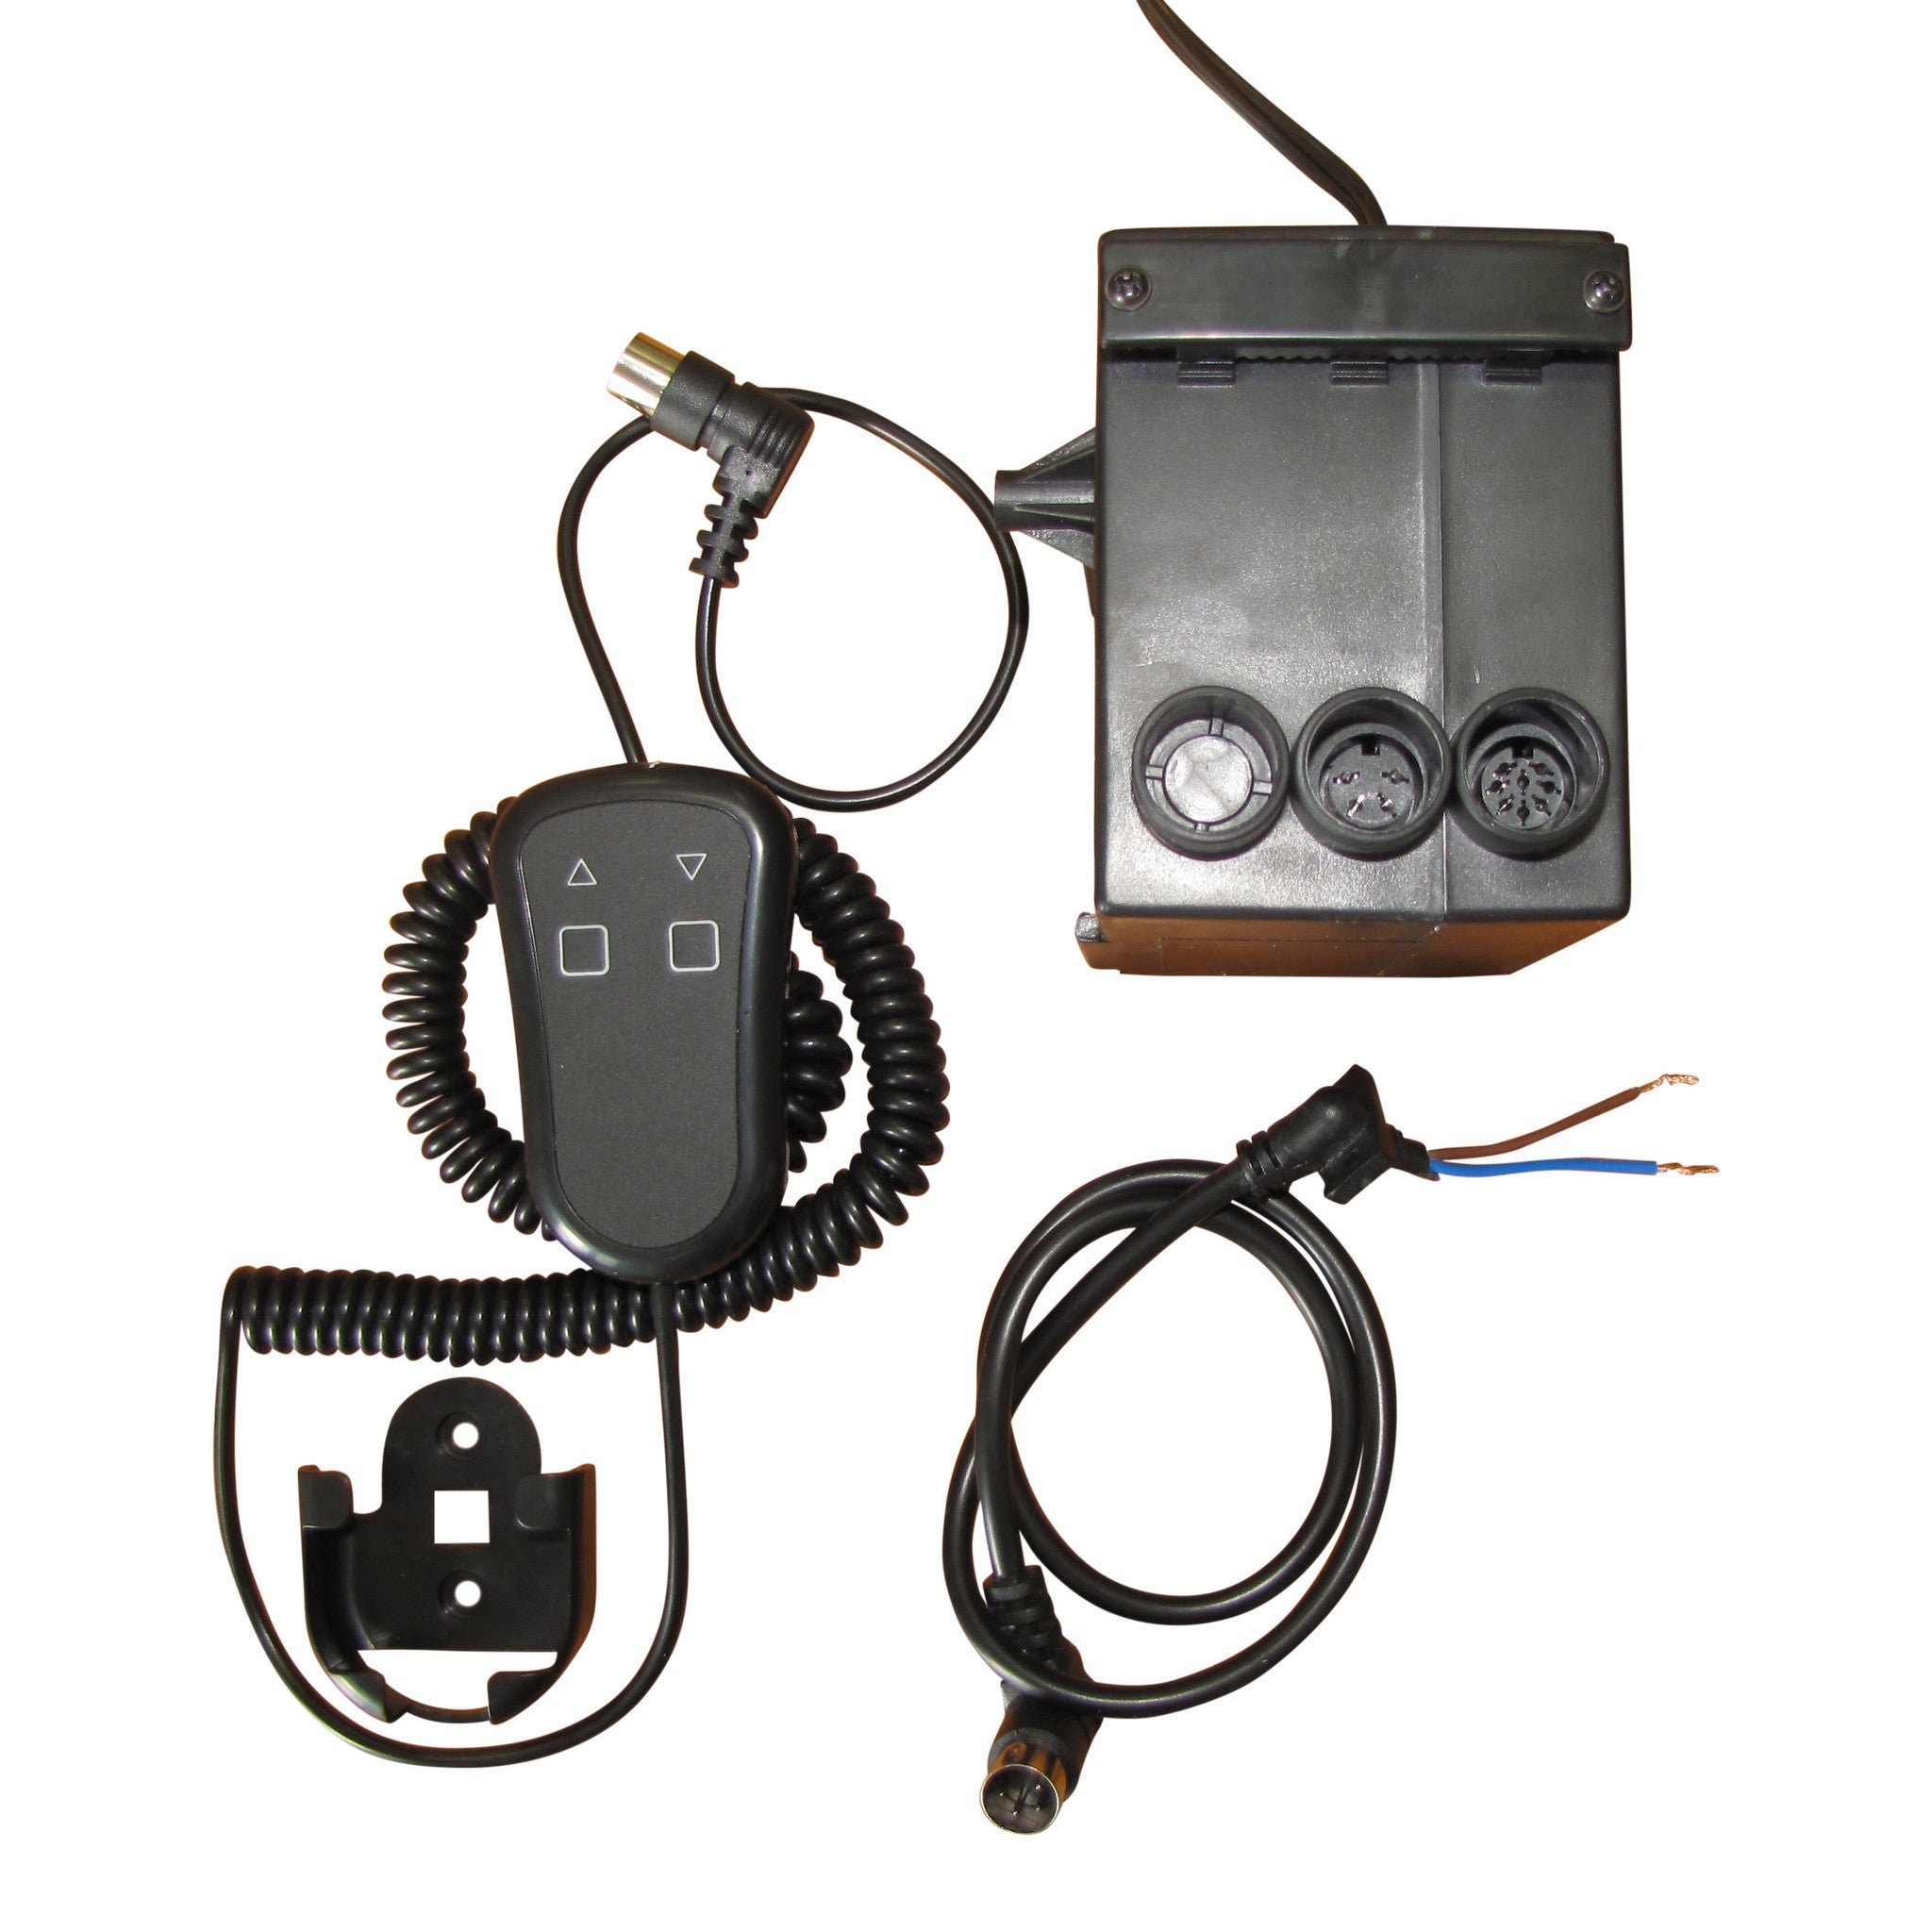 Sistema di controllo cablato portatile per attuatori - CSPS Product Image